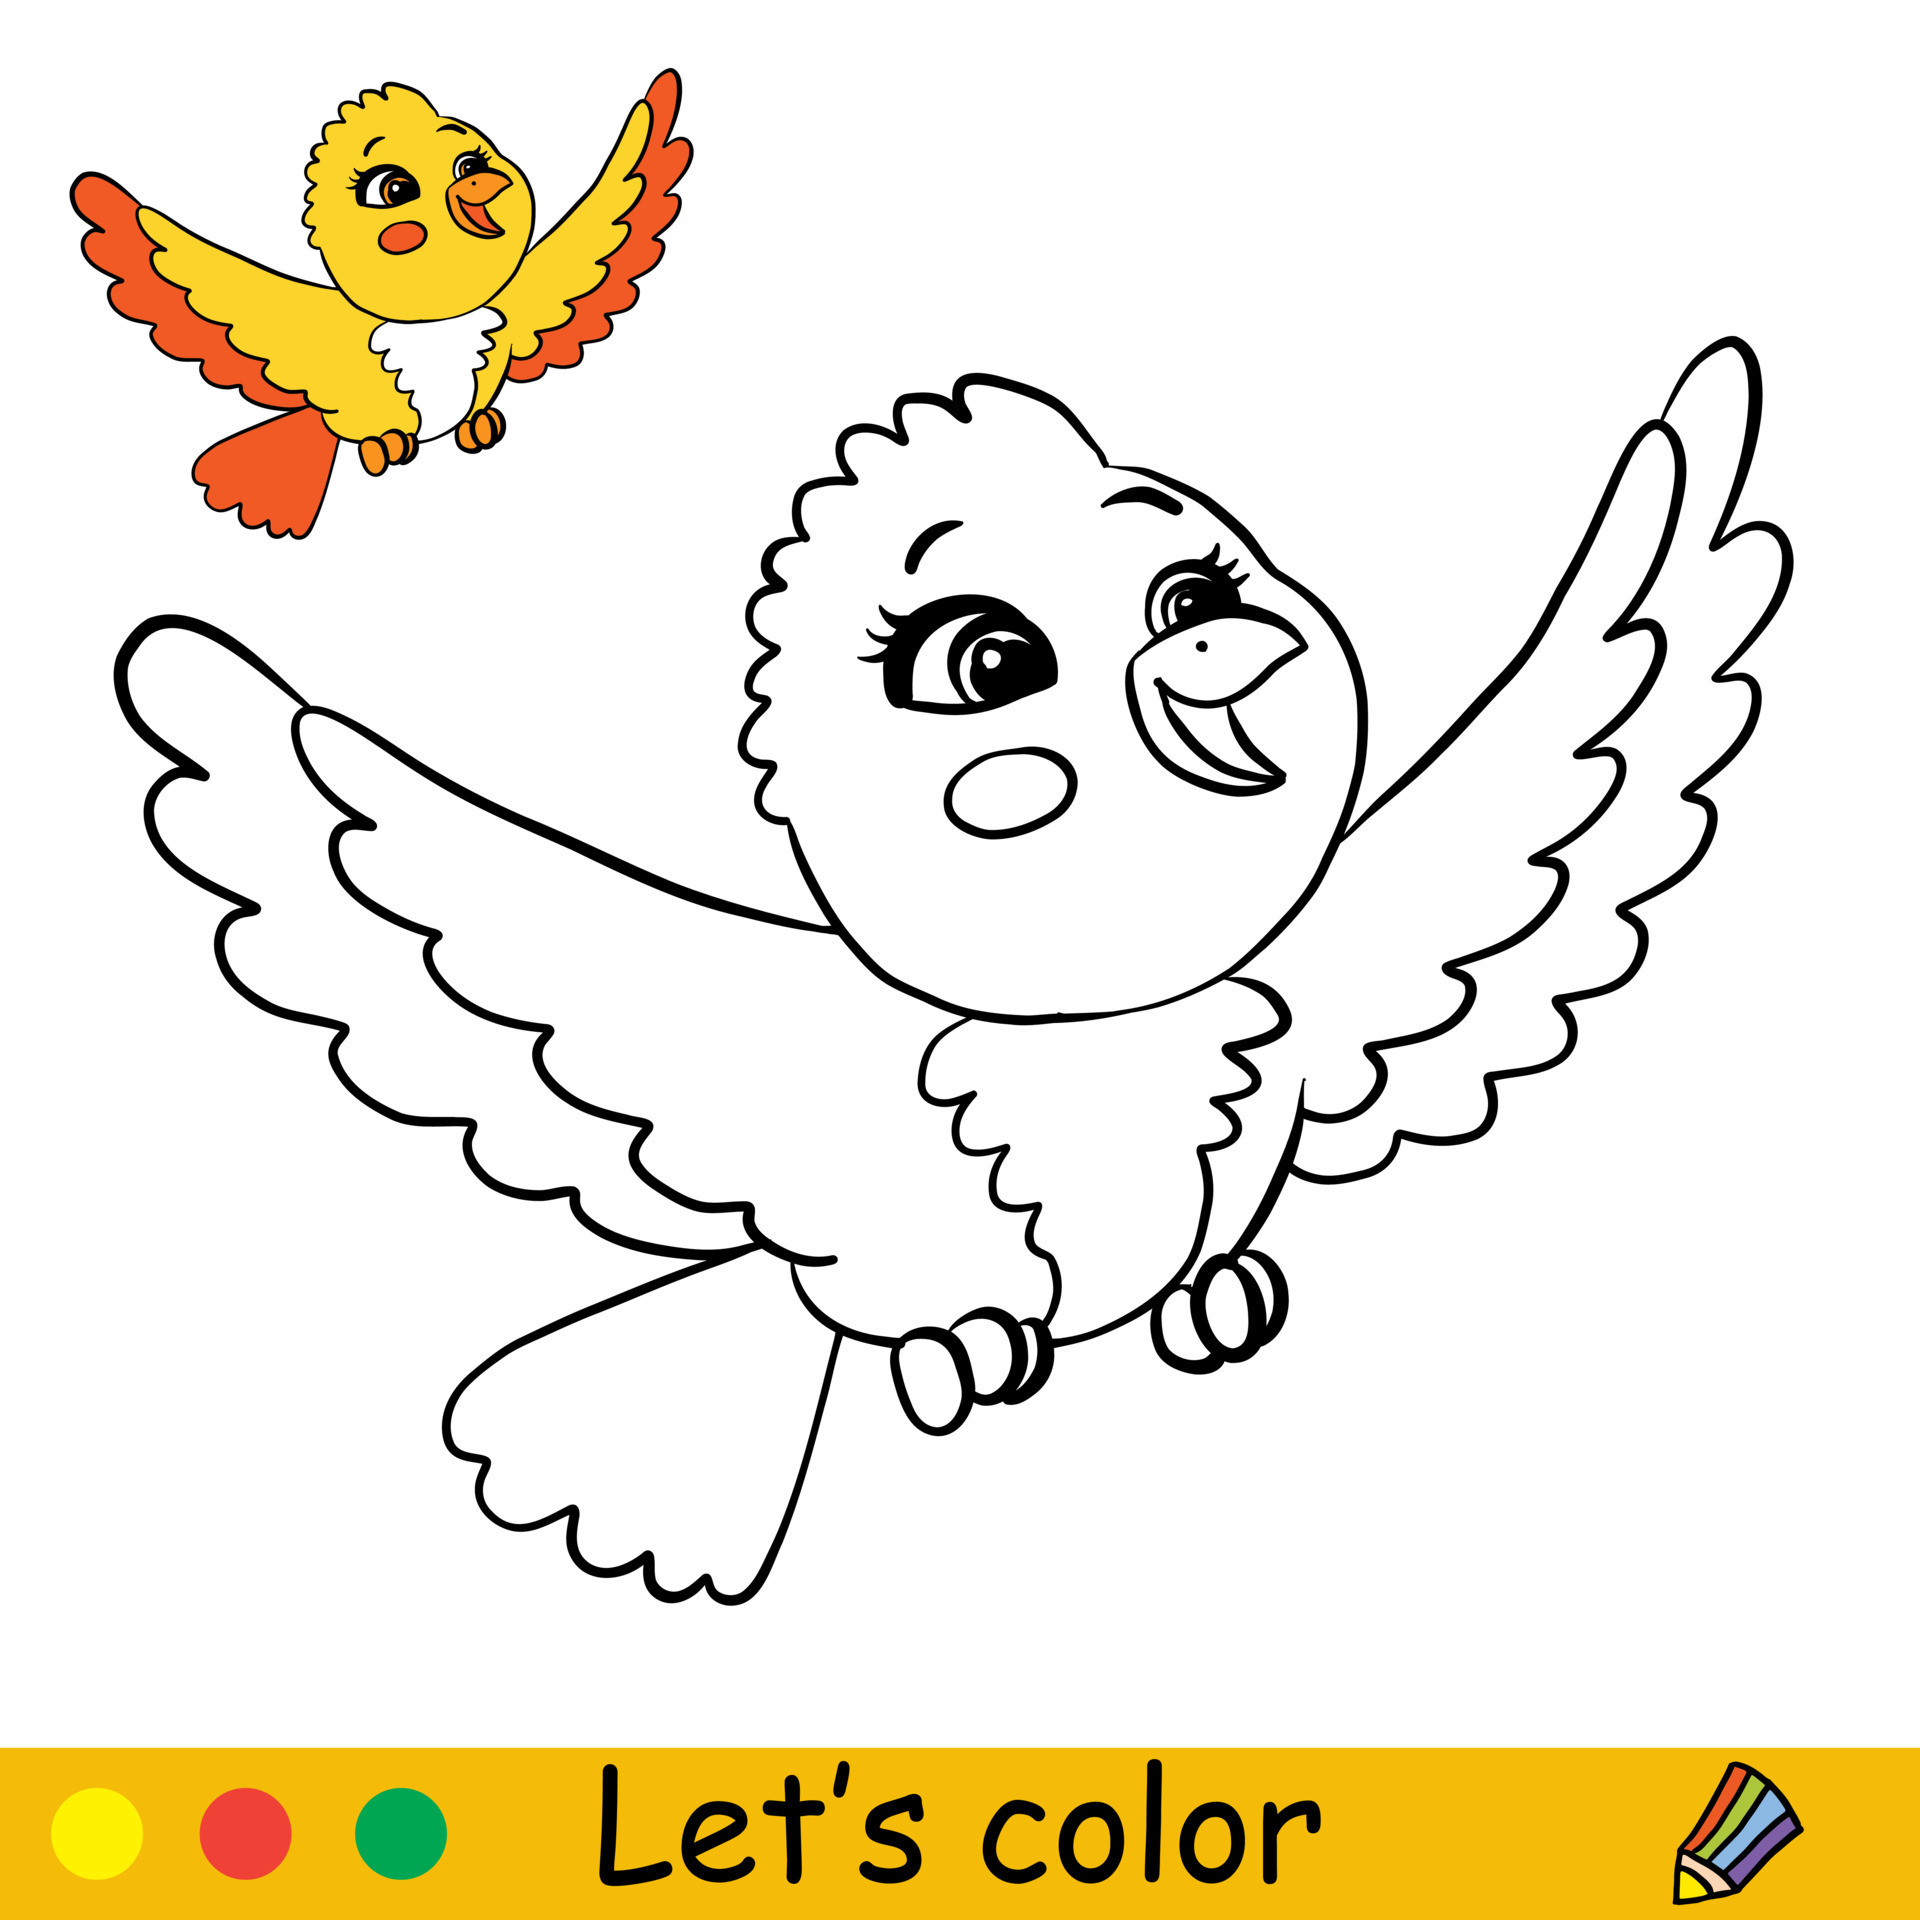 https://static.vecteezy.com/ti/vecteur-libre/p3/16517988-coloriage-d-oiseau-heureux-de-dessin-anime-mignon-avec-modele-vectoriel.jpg